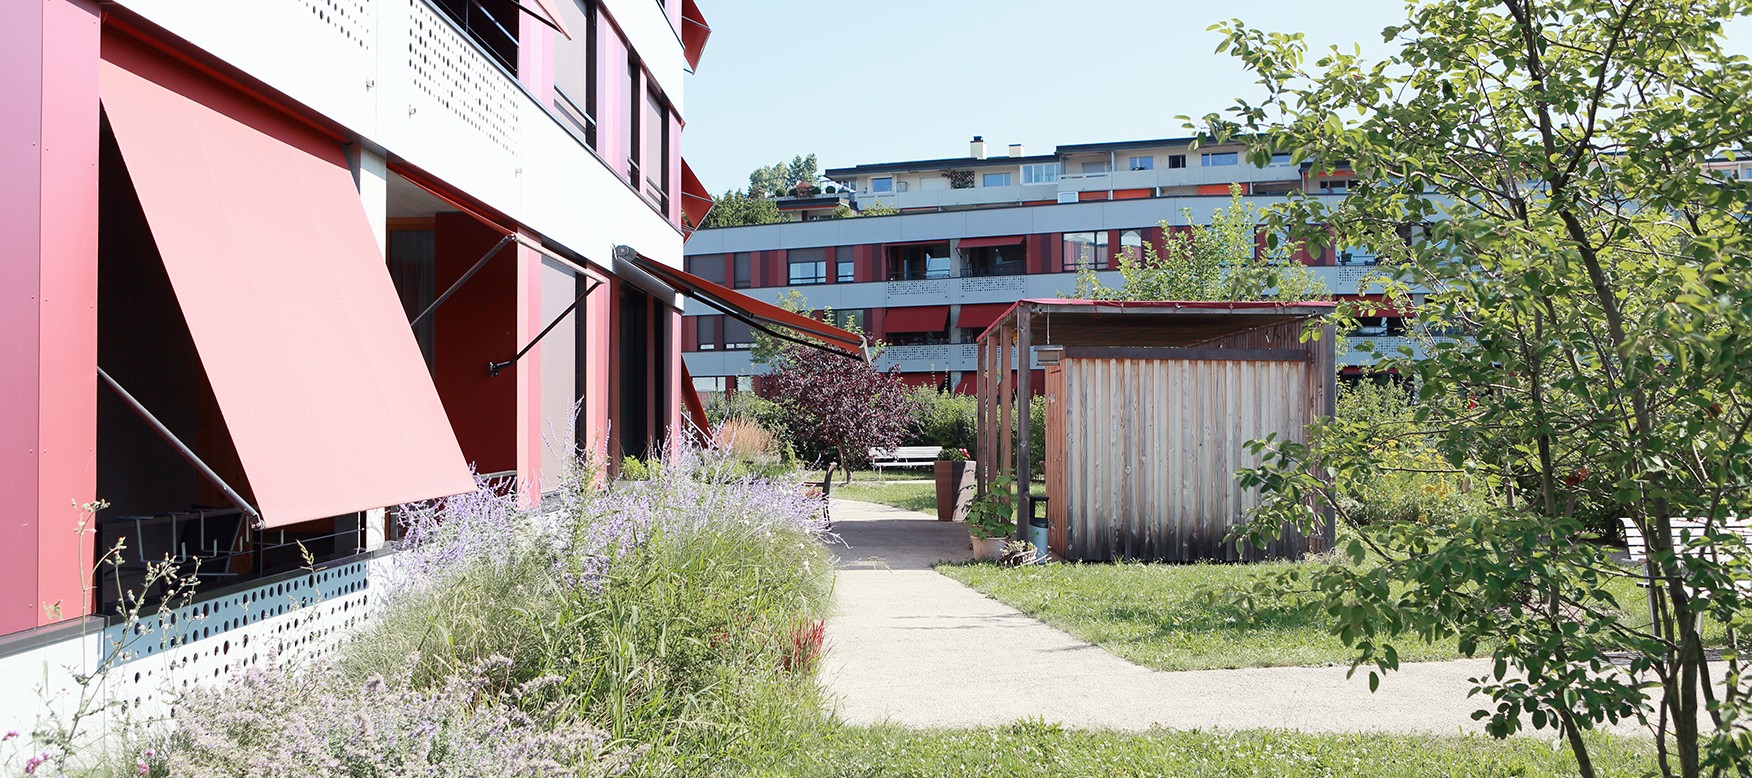 Alterswohnungs-Siedlung in Zürich